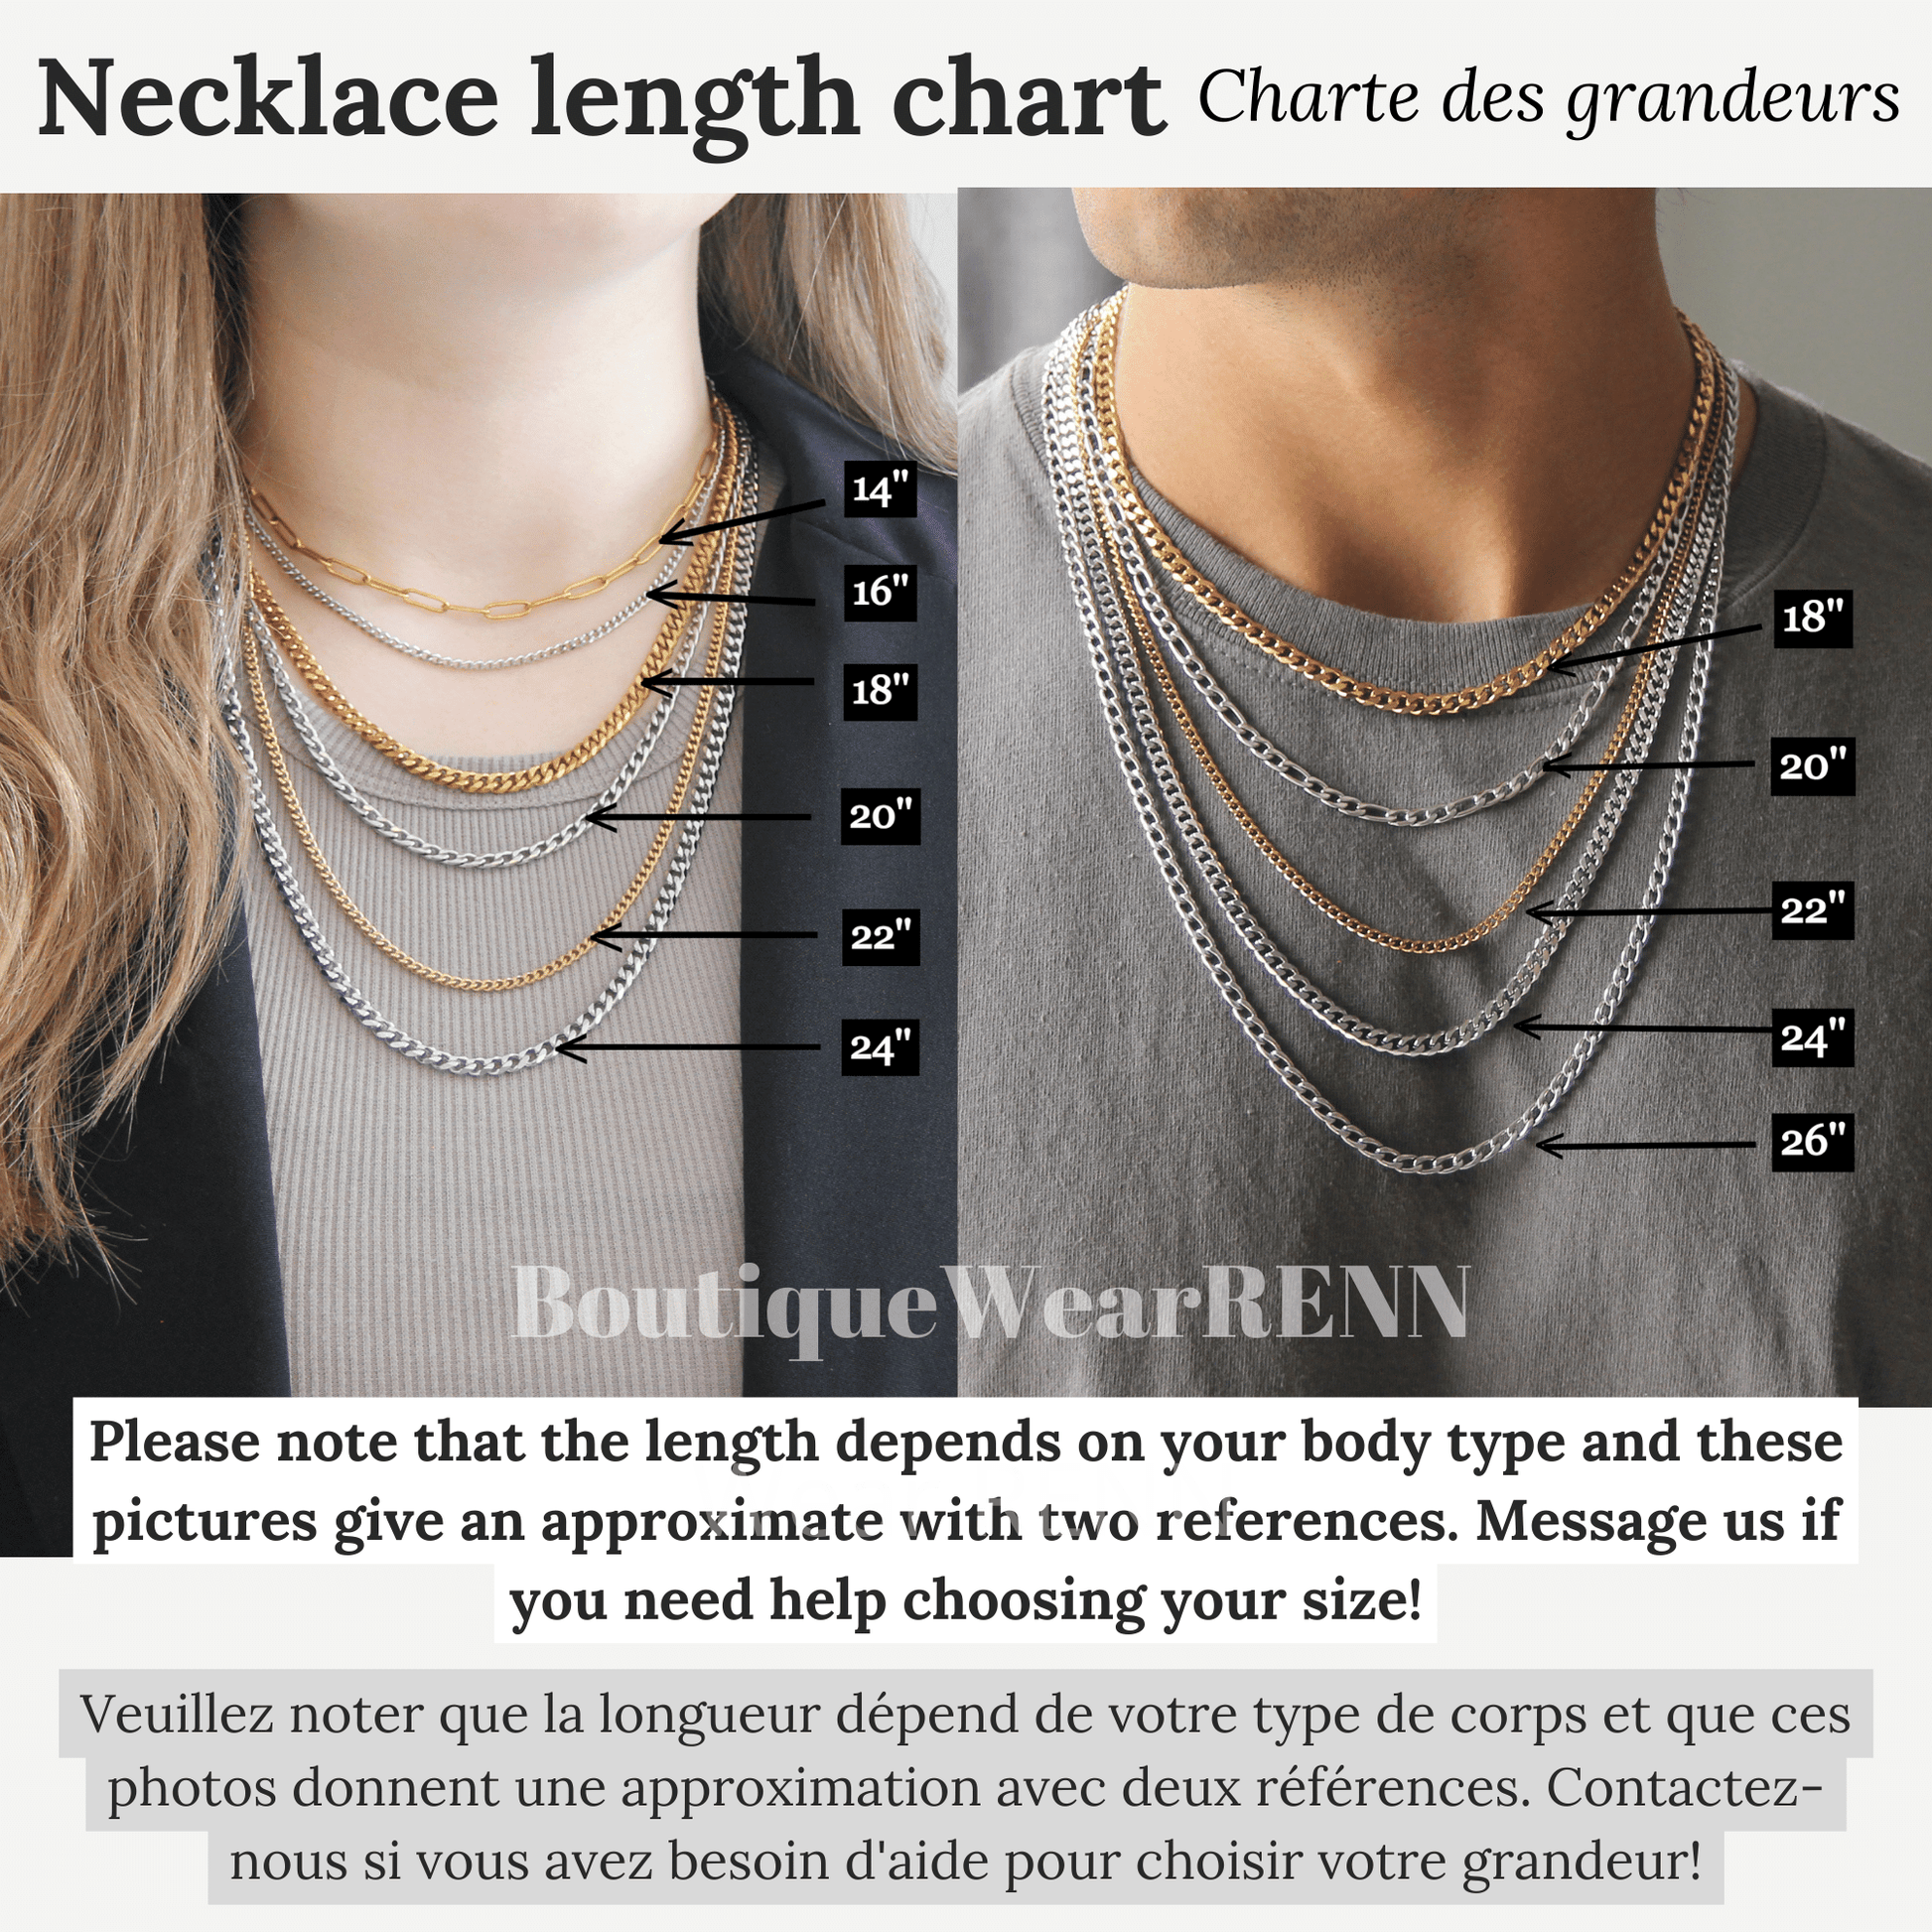 Necklace Length Size Chart - Boutique Wear RENN